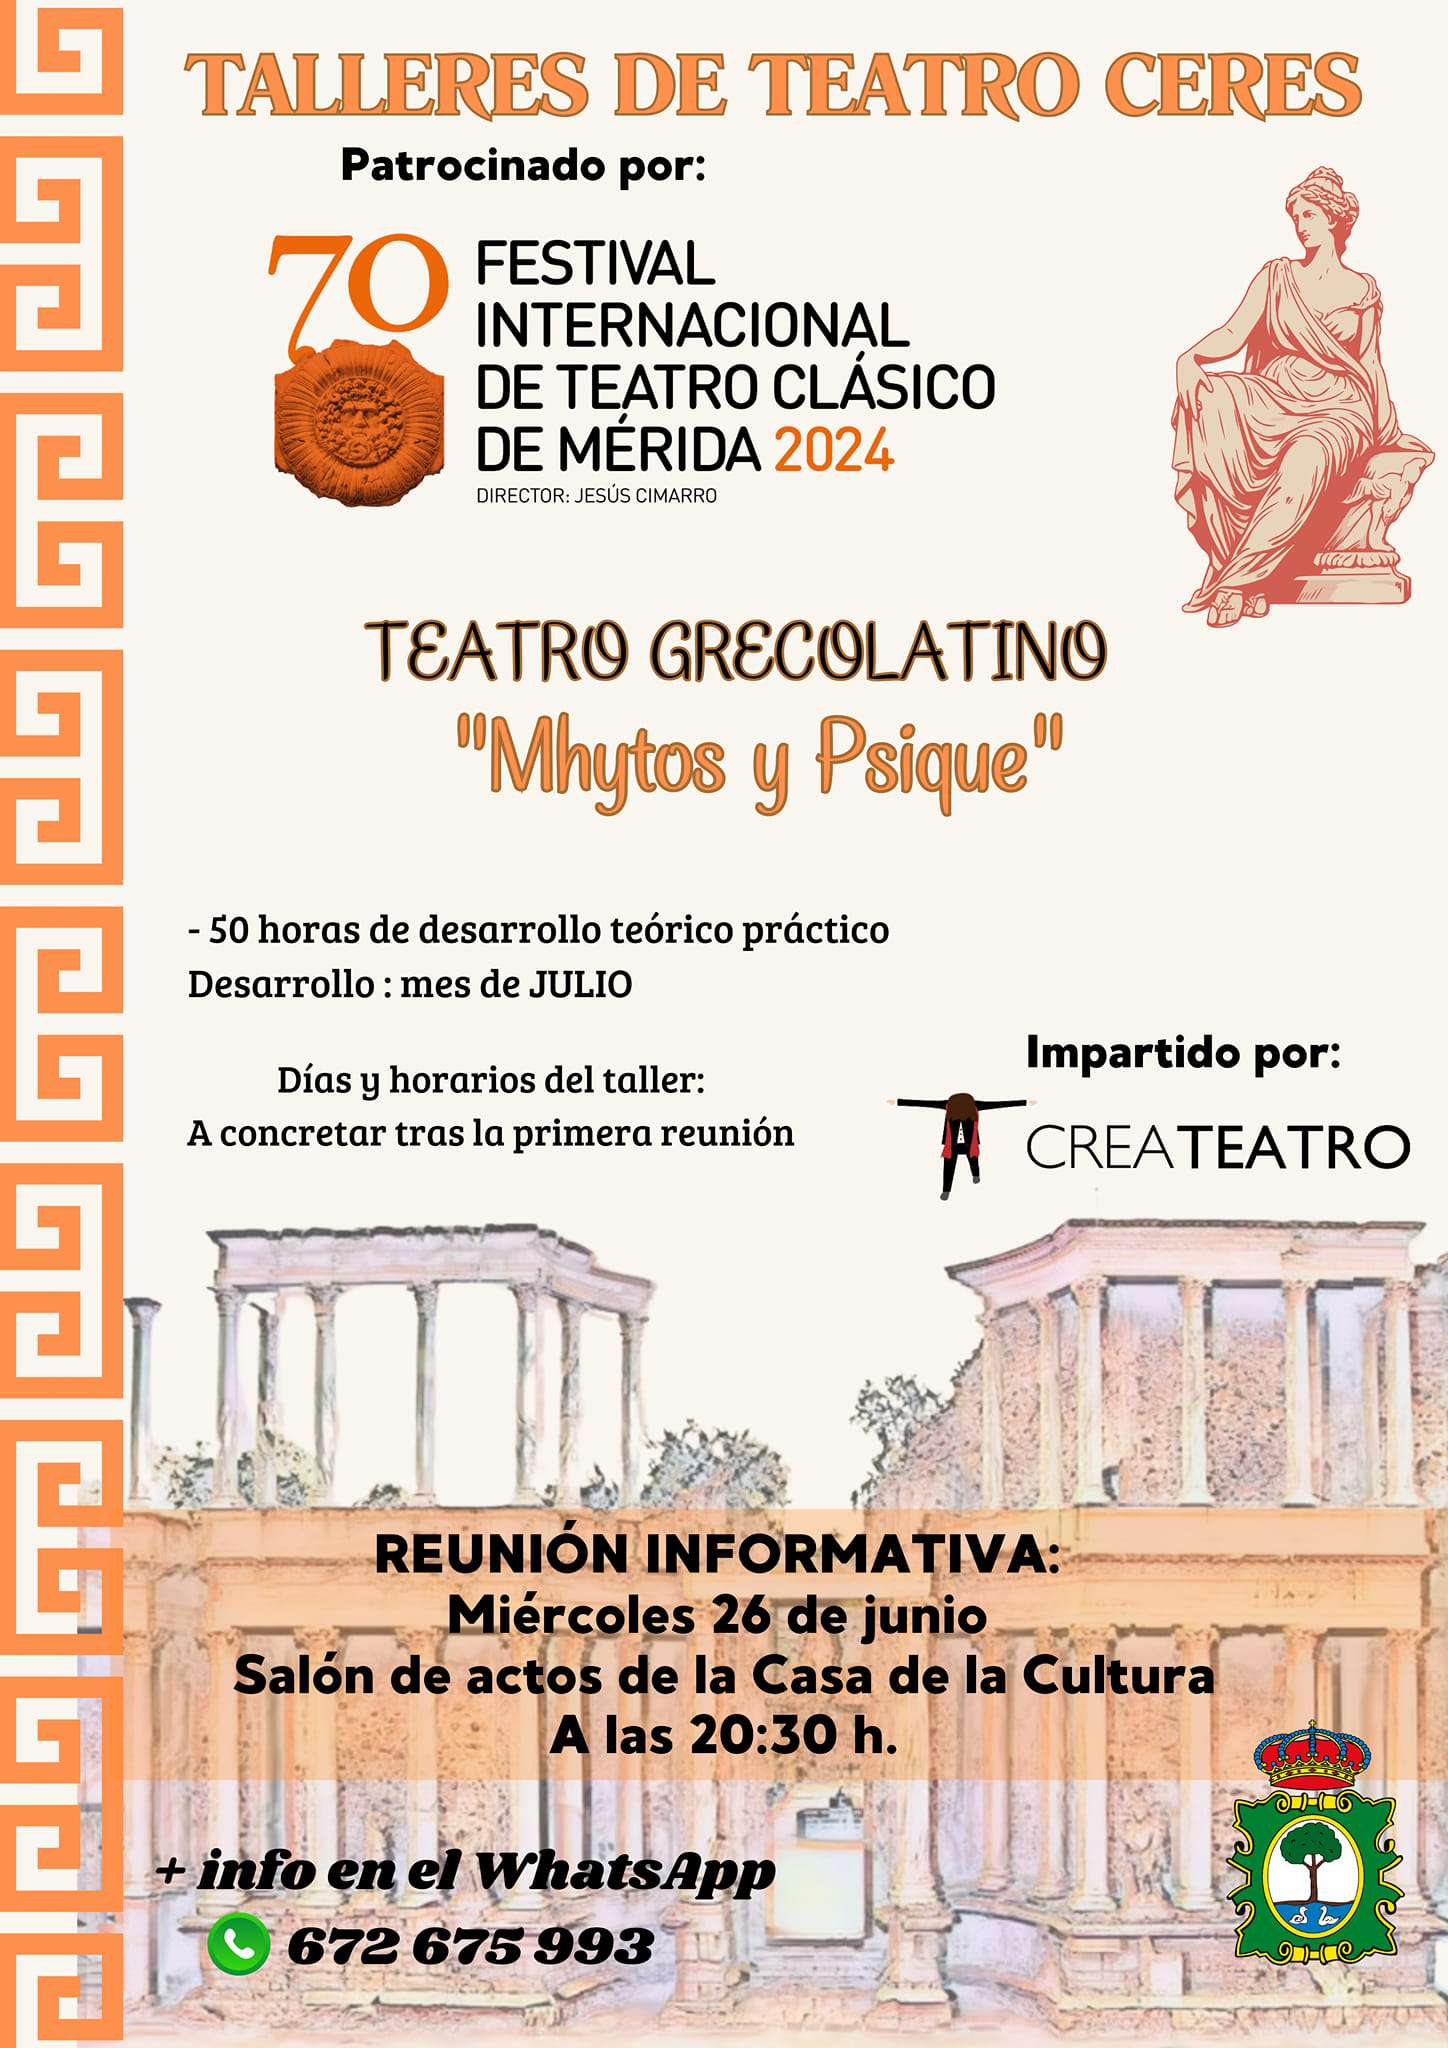 El taller de teatro Ceres se impartirá en Ribera del Fresno en julio con 'Mhytos y Psique' como tema principal